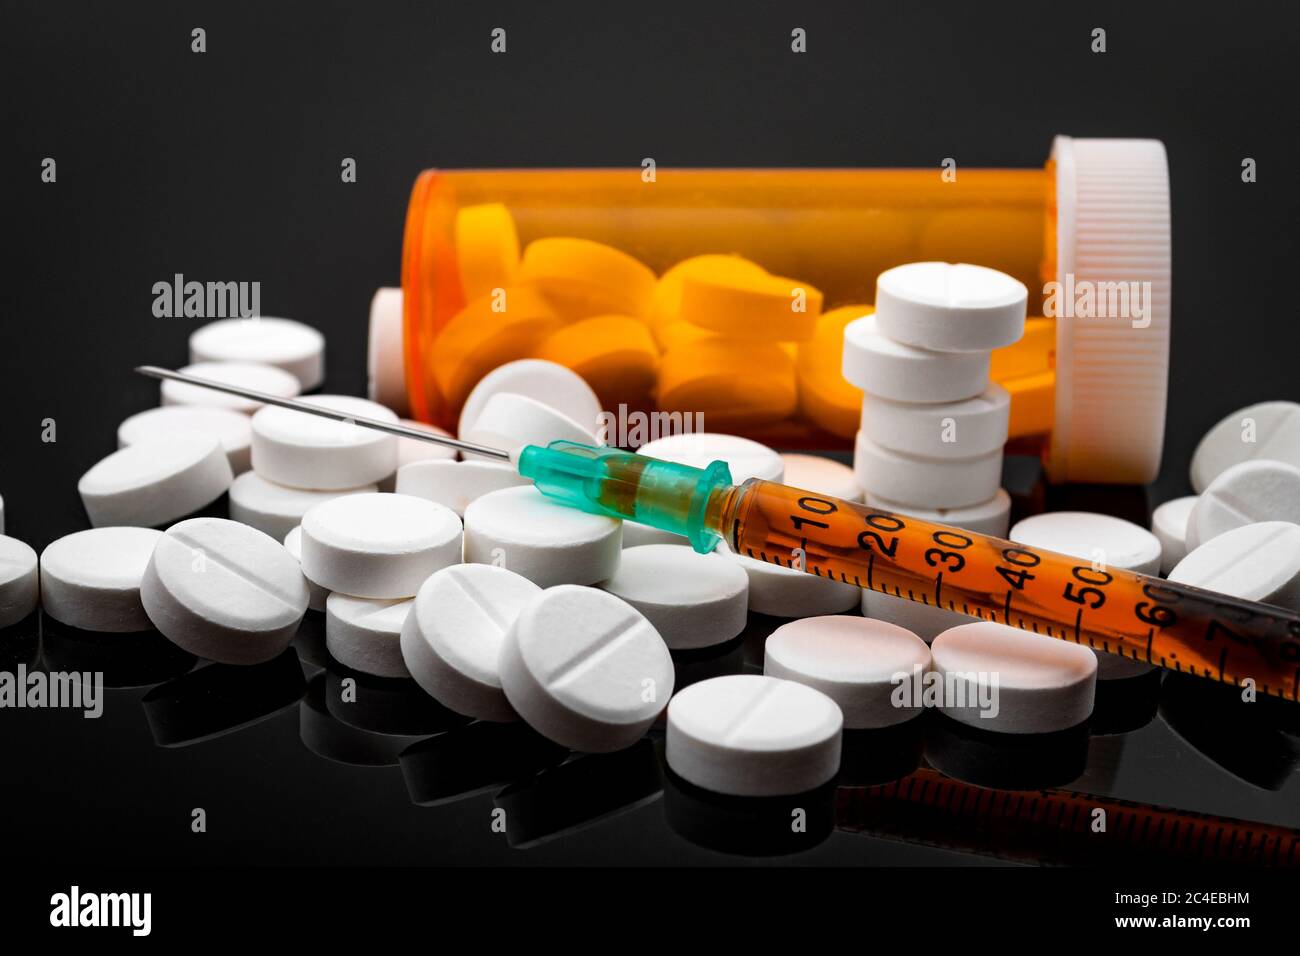 Concept d'épidémie d'opioïdes et d'abus de drogues avec une seringue d'héroïne ou d'autres substances narcotiques à côté d'une bouteille d'opioïdes d'ordonnance. Oxycodone est le g Banque D'Images